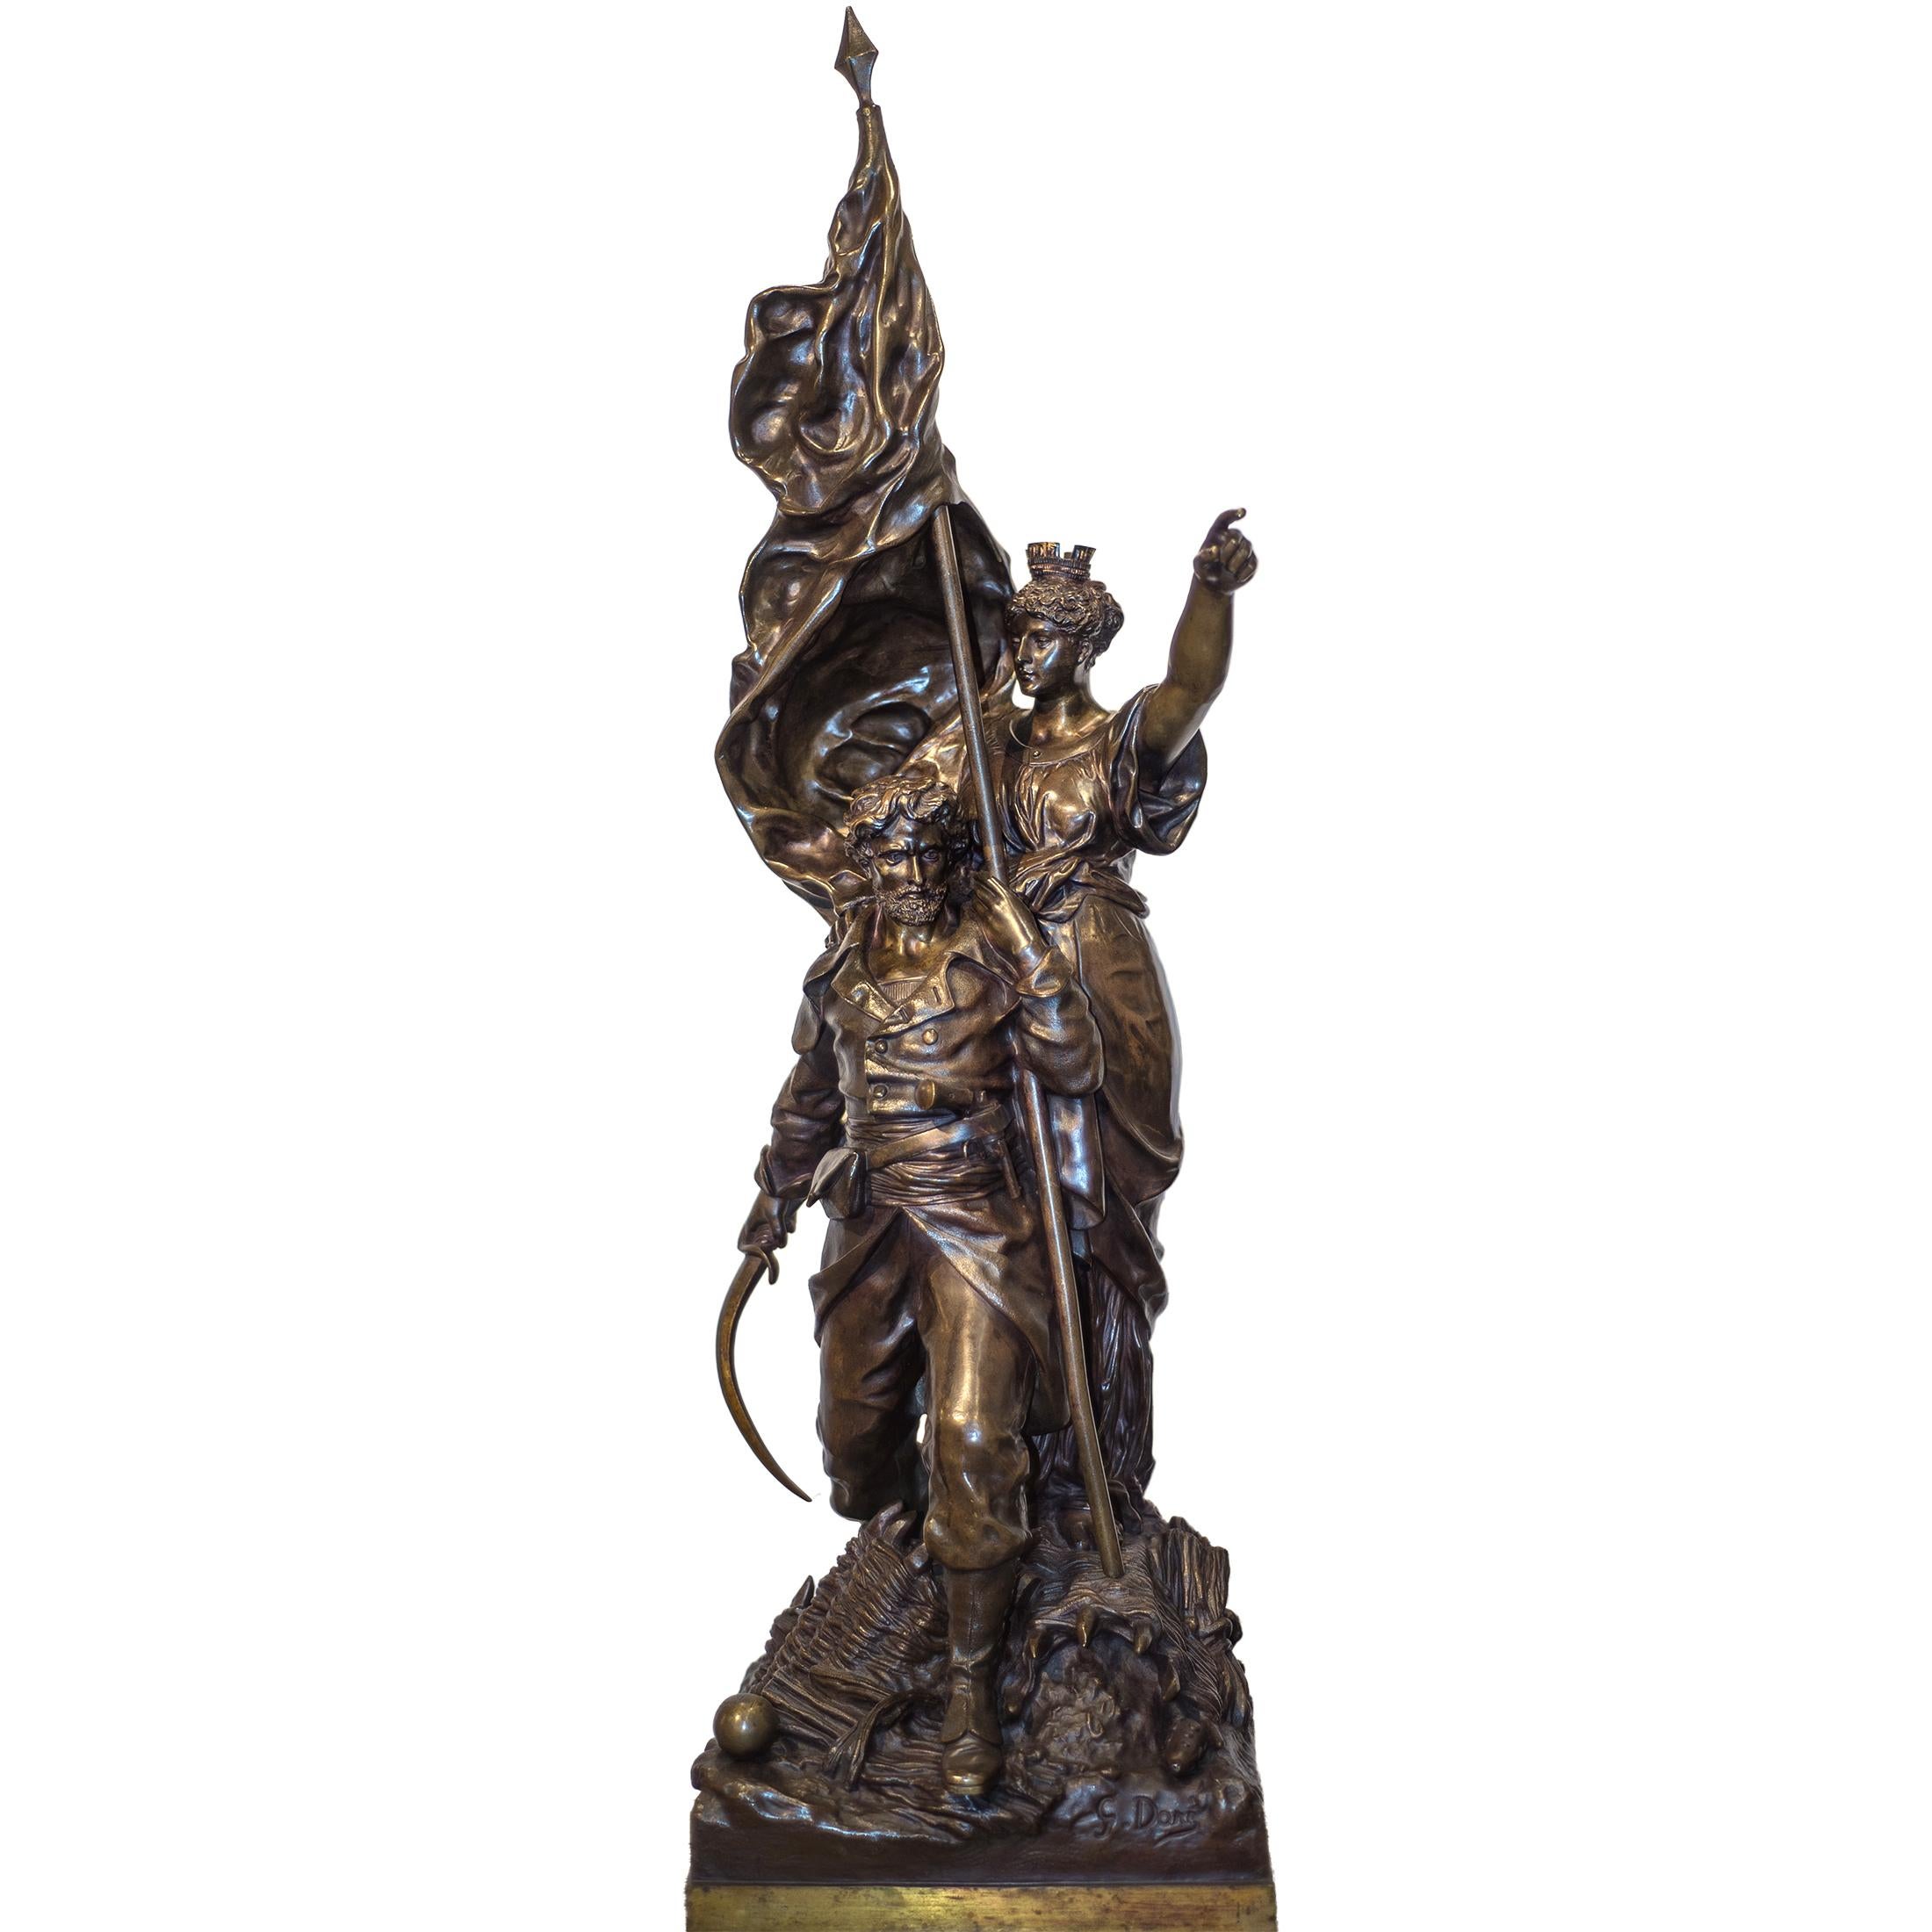 Künstler: Gustave Doré (1832-1883)
Herkunft: Französisch
Datum: 19. Jahrhundert
Abmessungen: 39 1/4 x 12 x 13 1/2 Zoll

Anmerkungen:
Der patriotische Soldat, der eine Fahne und ein Schwert in der Hand hält, und eine Frau mit einer Krone auf